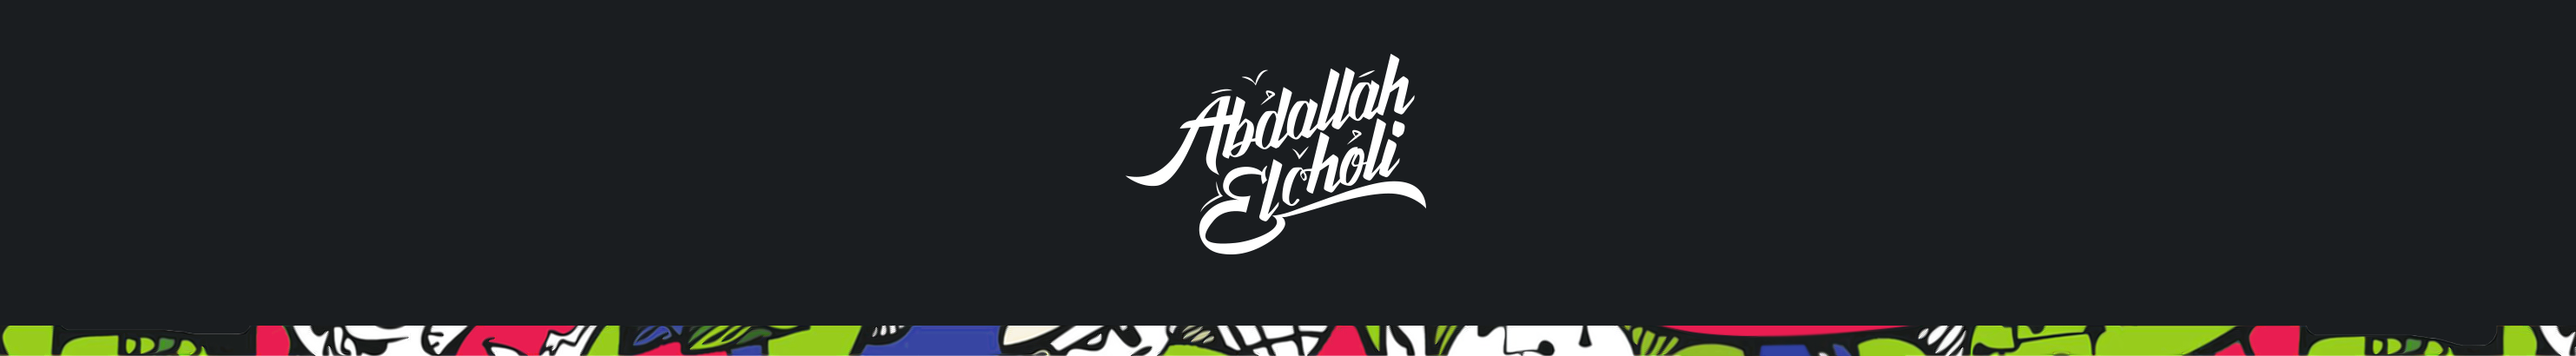 Abdallah El Cholis profilbanner